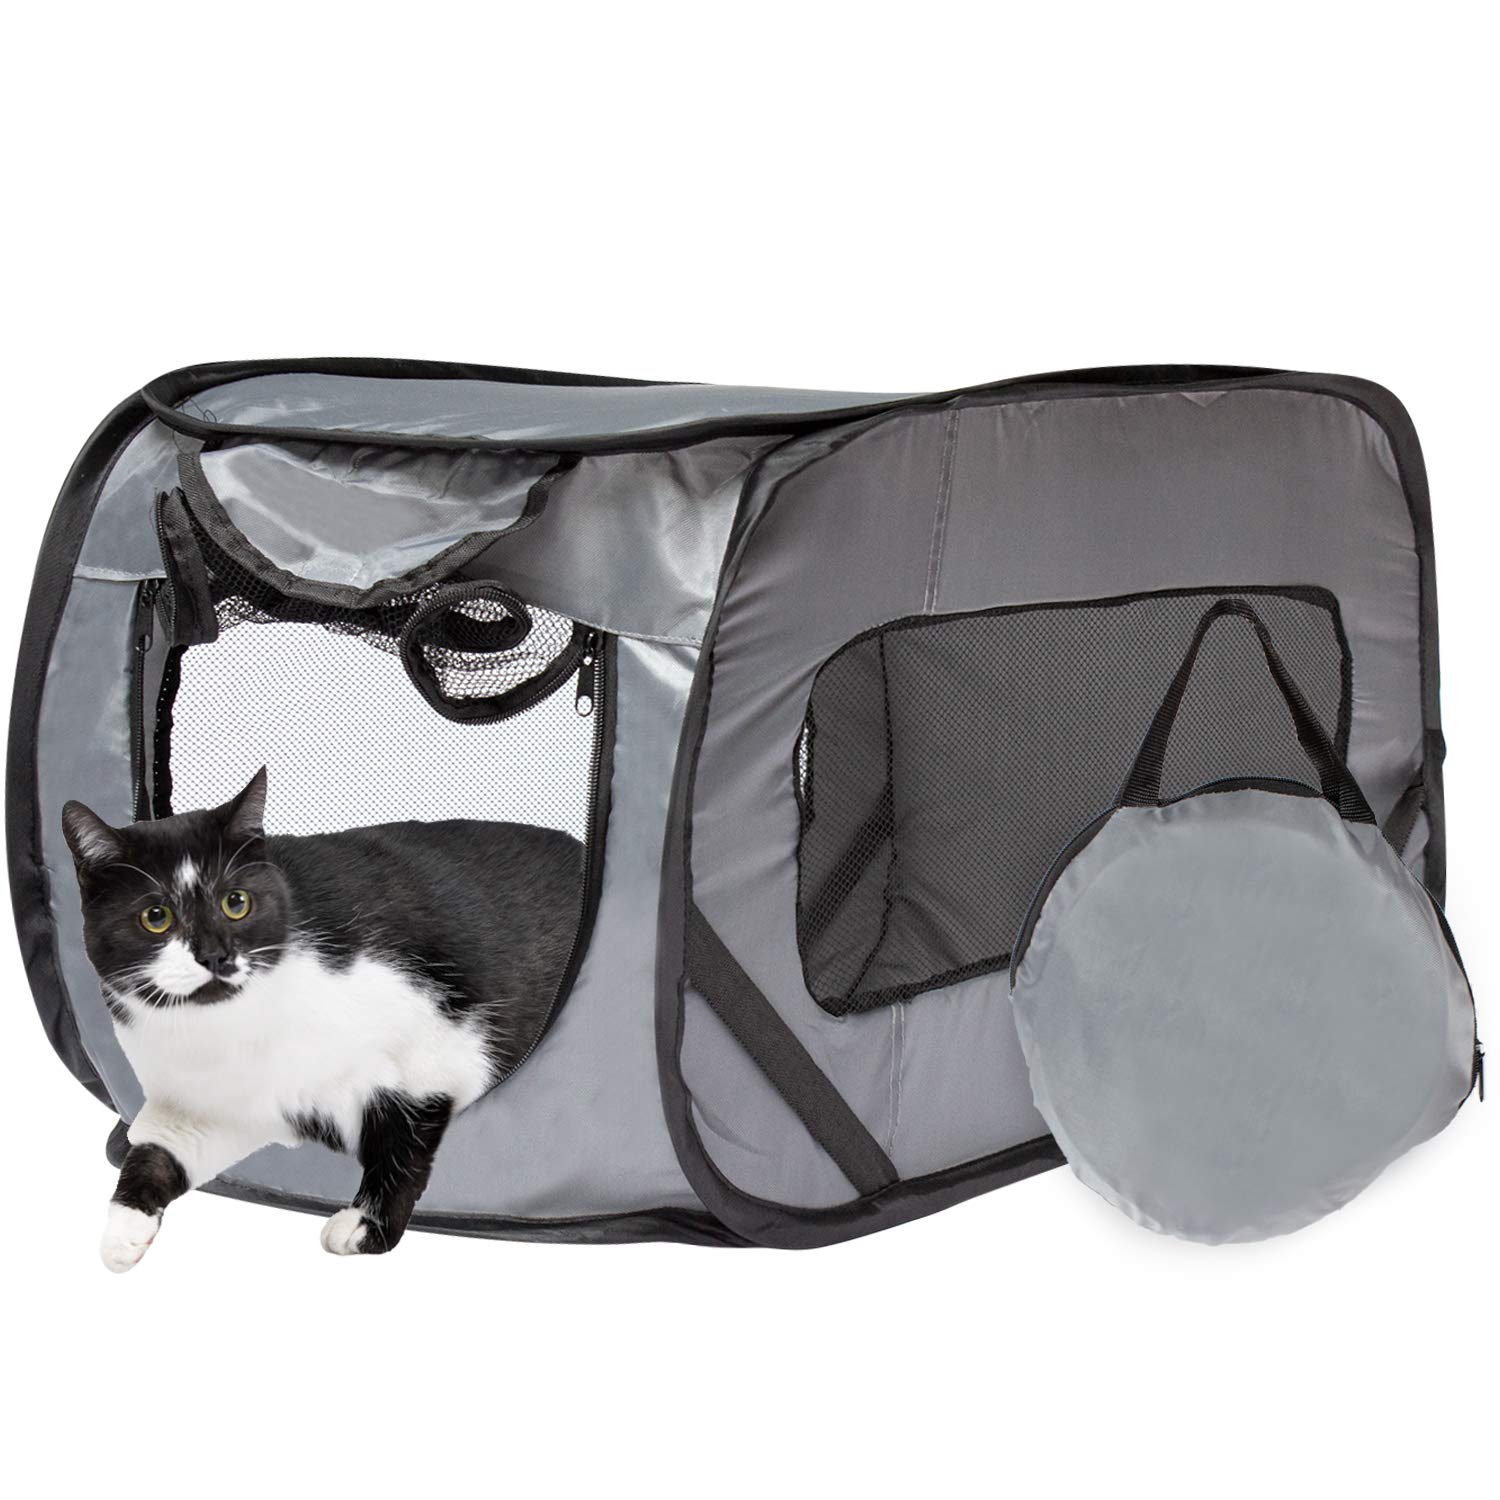 Puppy qələm və pişik çadırı, ev heyvanları üçün universal pişik daşıyıcısı